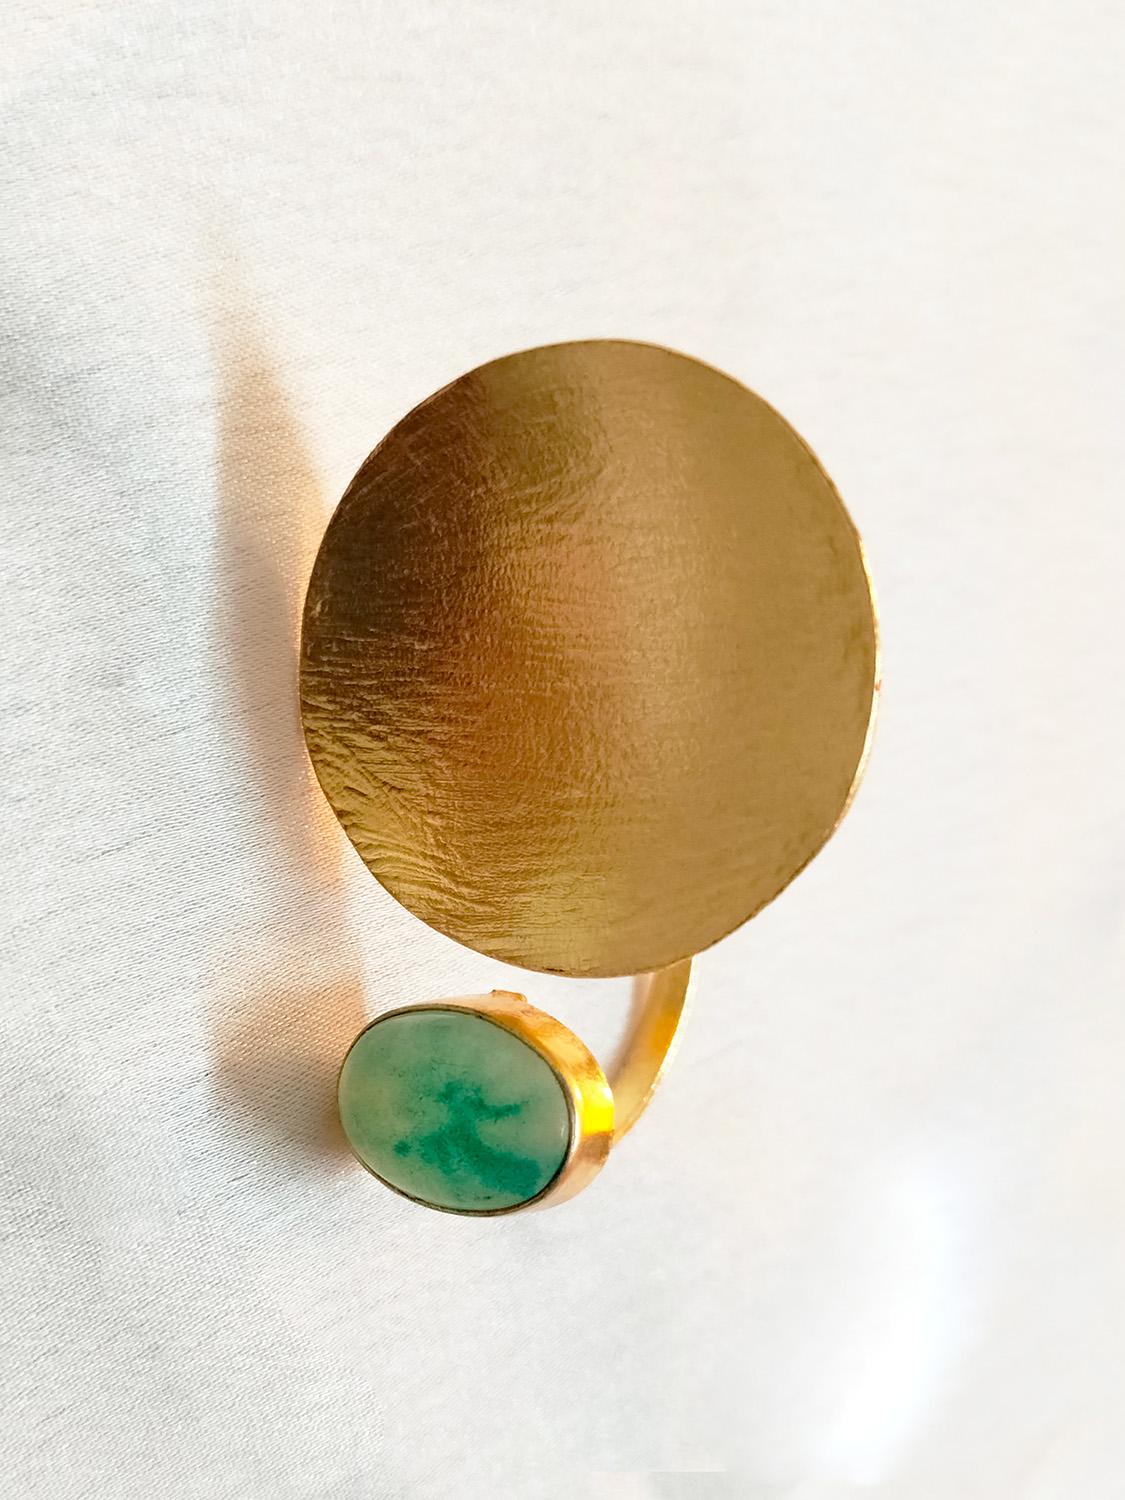 Golden Green Onyx Ring for Women